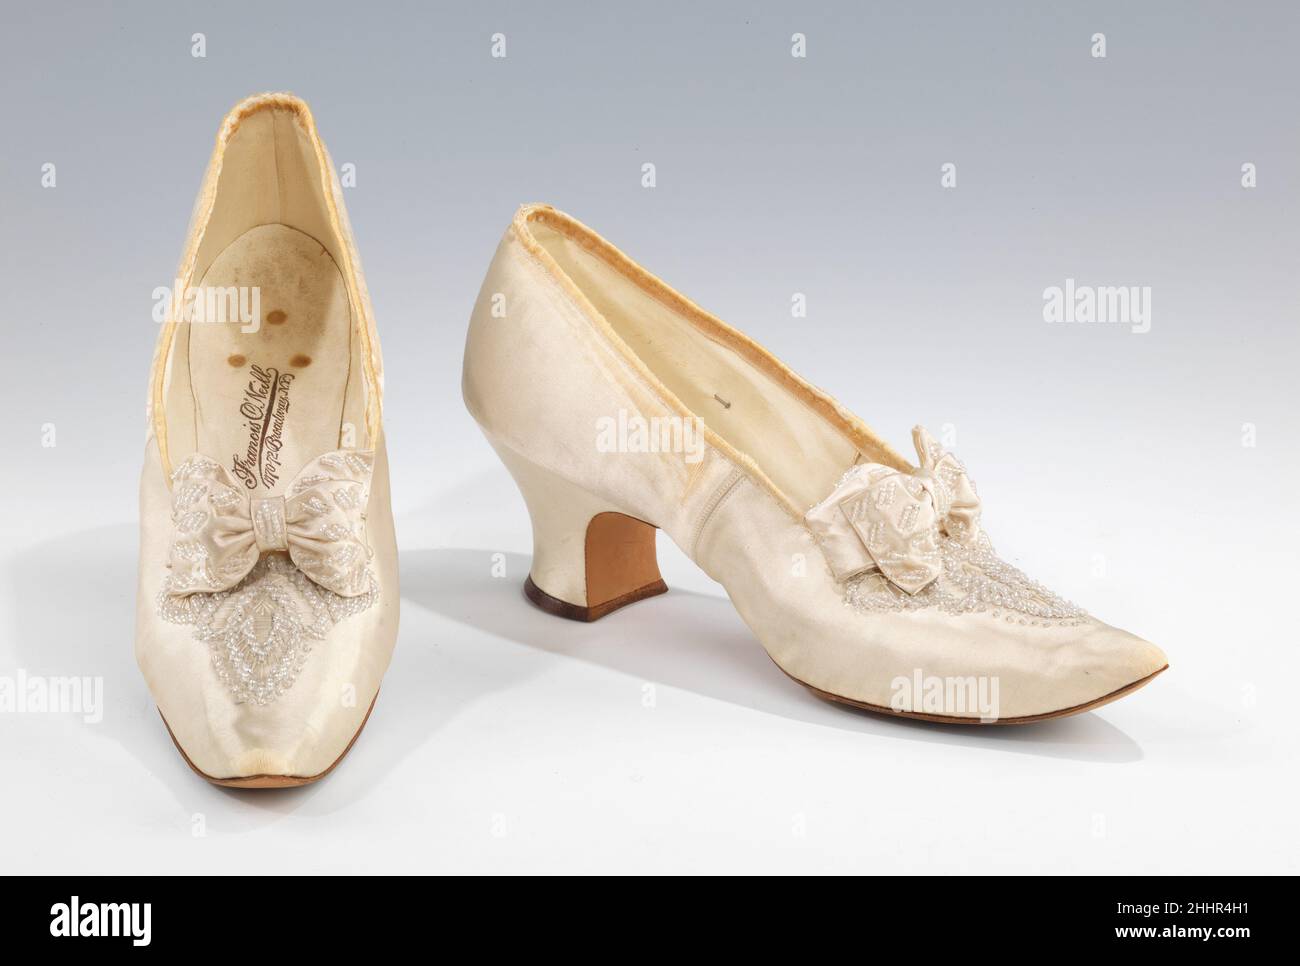 preferible Impuro Pronombre Por la noche zapatillas ca. 1898 Francis O'Neill American Mientras que las  modas de zapatos varían en los Estados Unidos y Europa, los diseños  franceses siempre han tenido un cierto cachet que